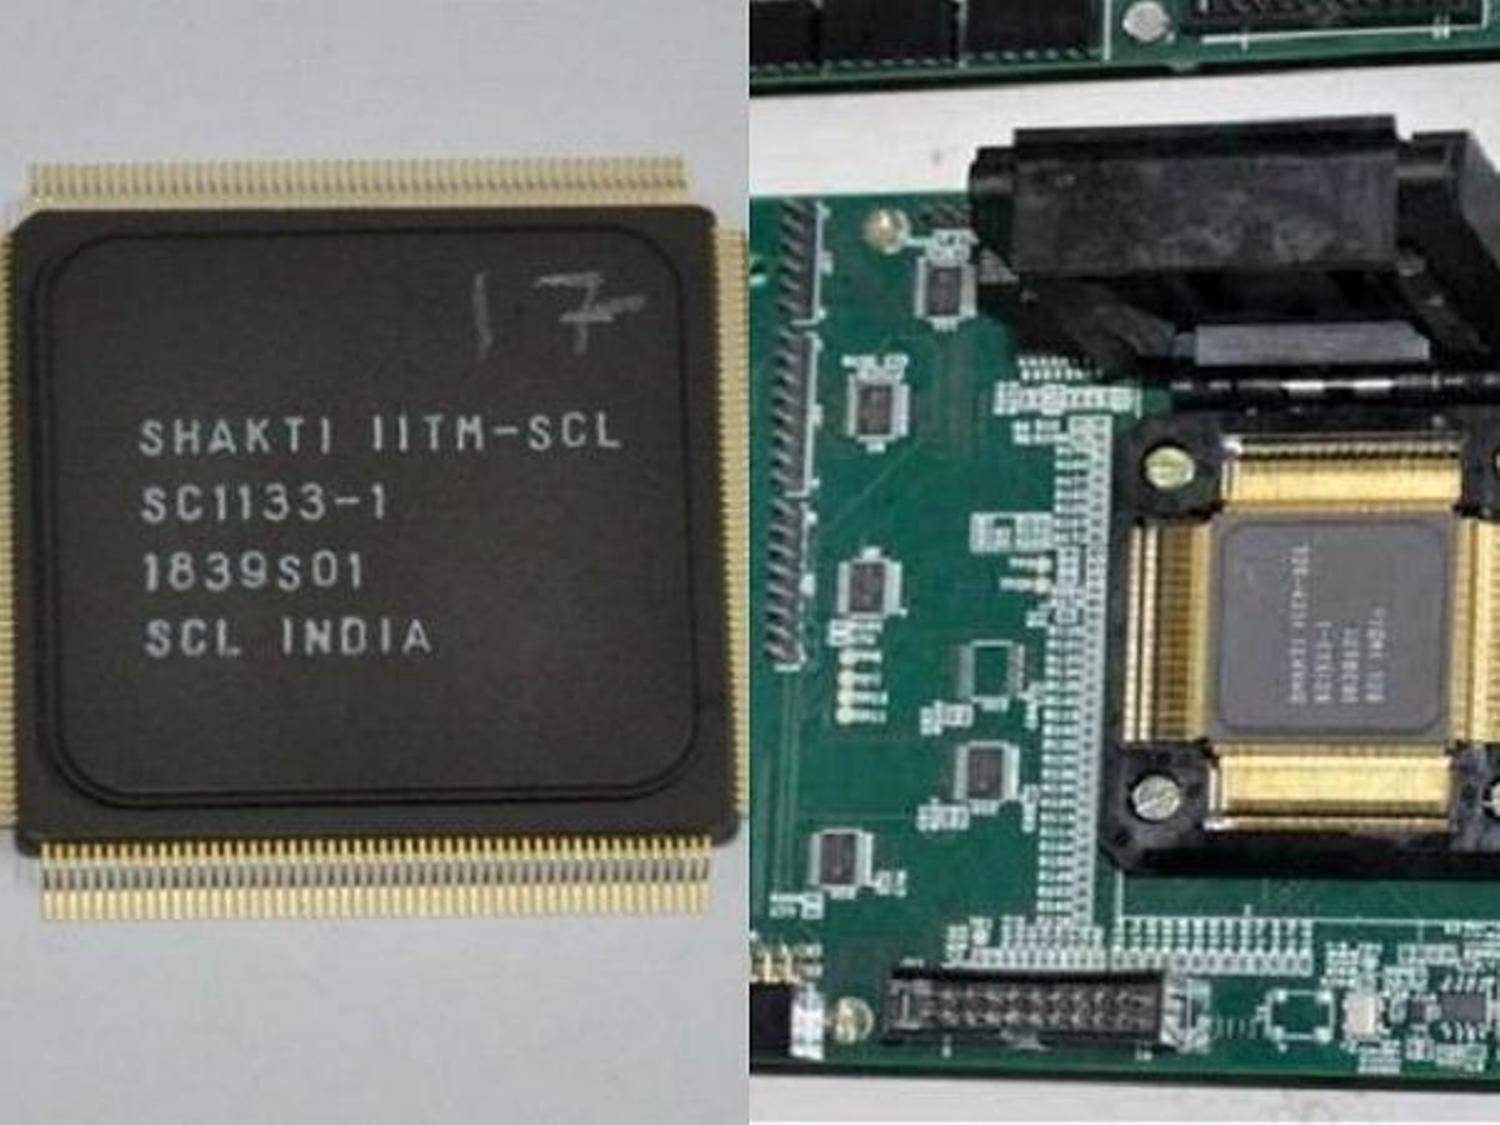 आईआईटी मद्रास ने देश का पहला माइक्रोप्रोसेसर शक्ति विकसित किया